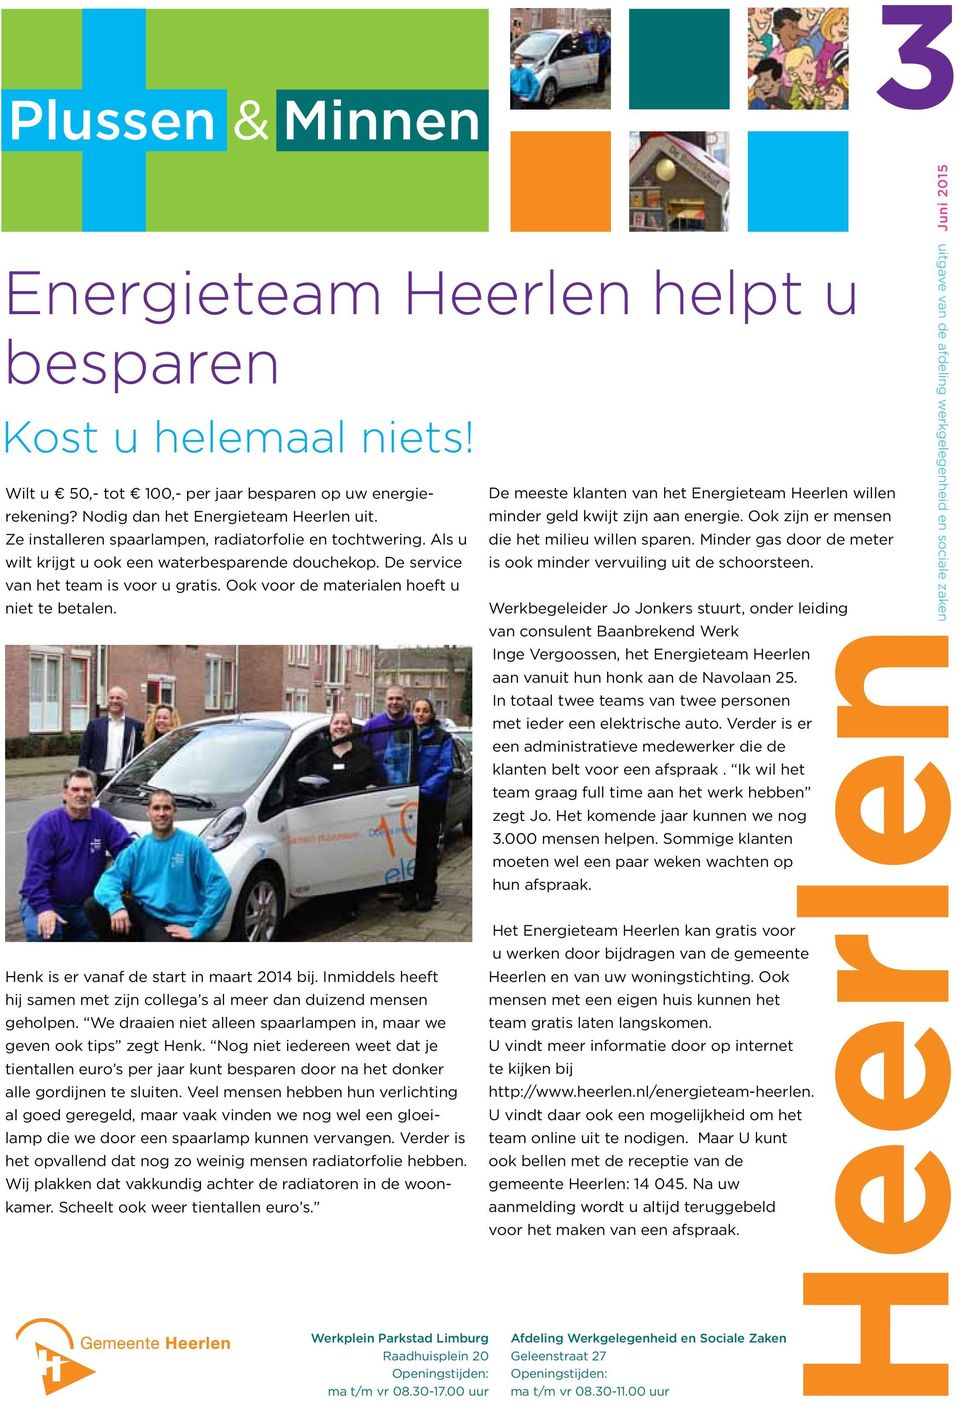 Ook voor de materialen hoeft u niet te betalen. De meeste klanten van het Energieteam Heerlen willen minder geld kwijt zijn aan energie. Ook zijn er mensen die het milieu willen sparen.